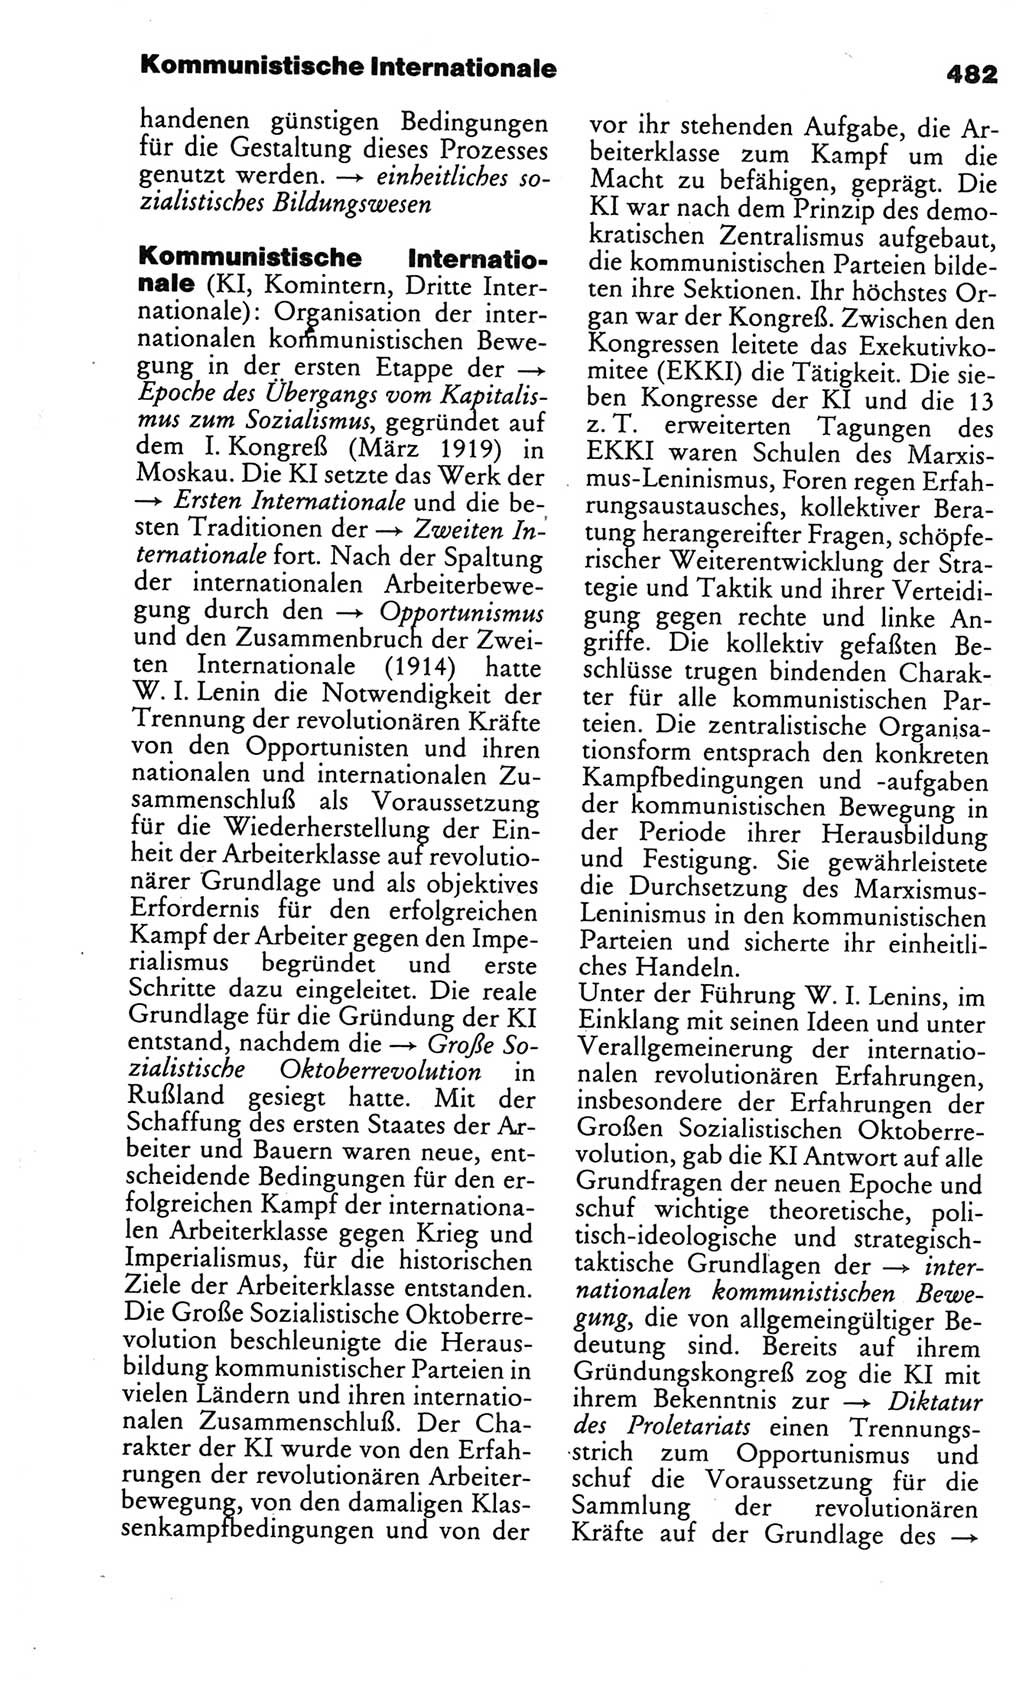 Kleines politisches Wörterbuch [Deutsche Demokratische Republik (DDR)] 1986, Seite 482 (Kl. pol. Wb. DDR 1986, S. 482)